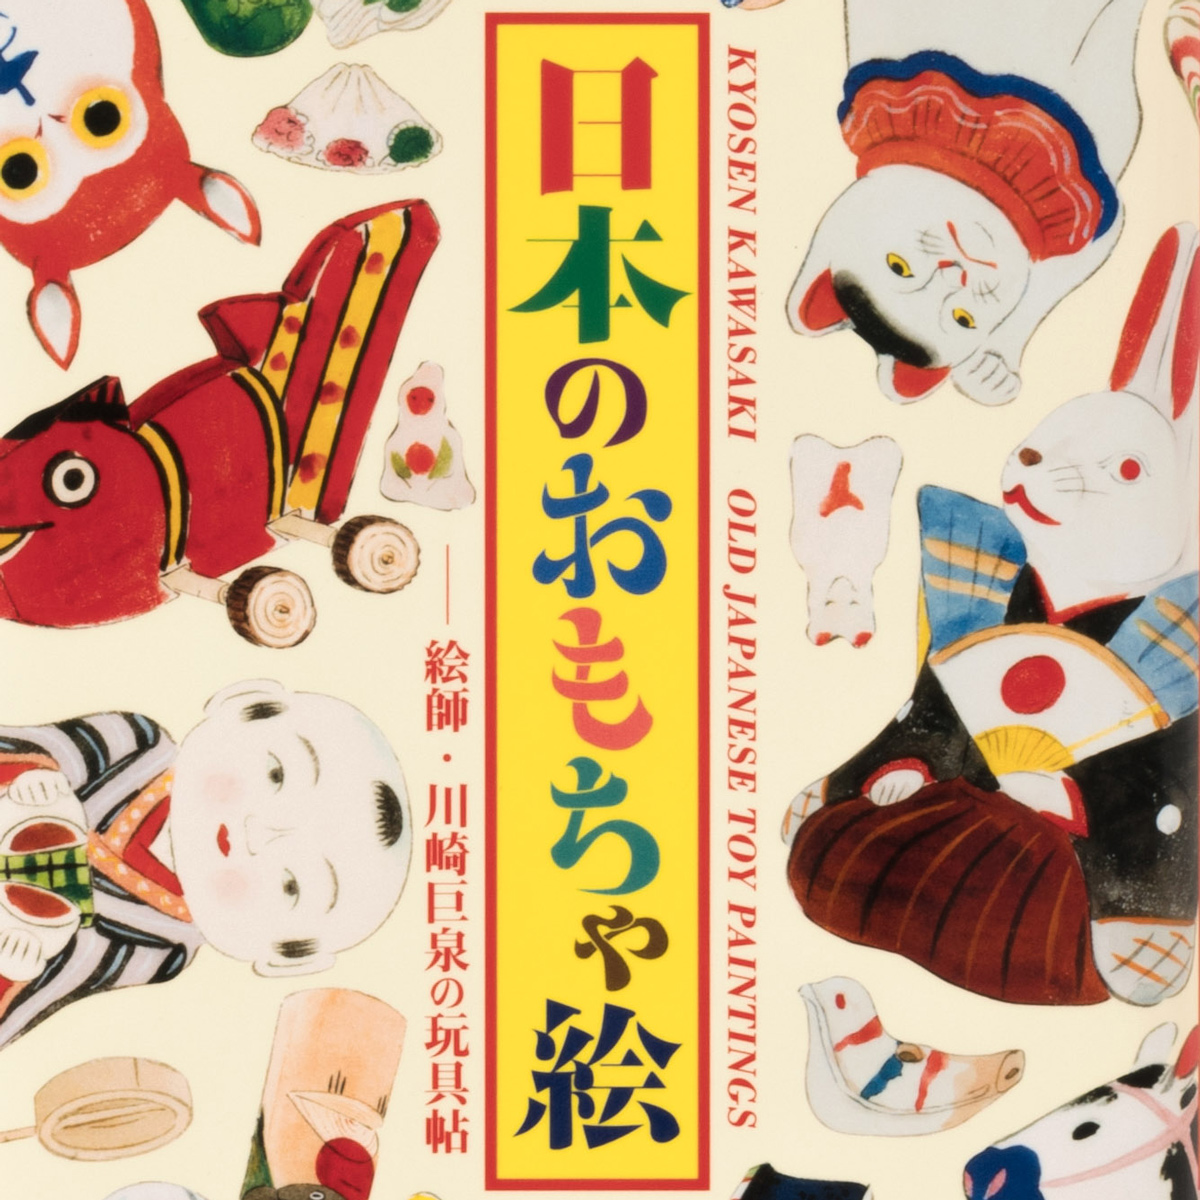 日本のおもちゃ絵 絵師・川崎巨泉の玩具帖 – へのへの図案社